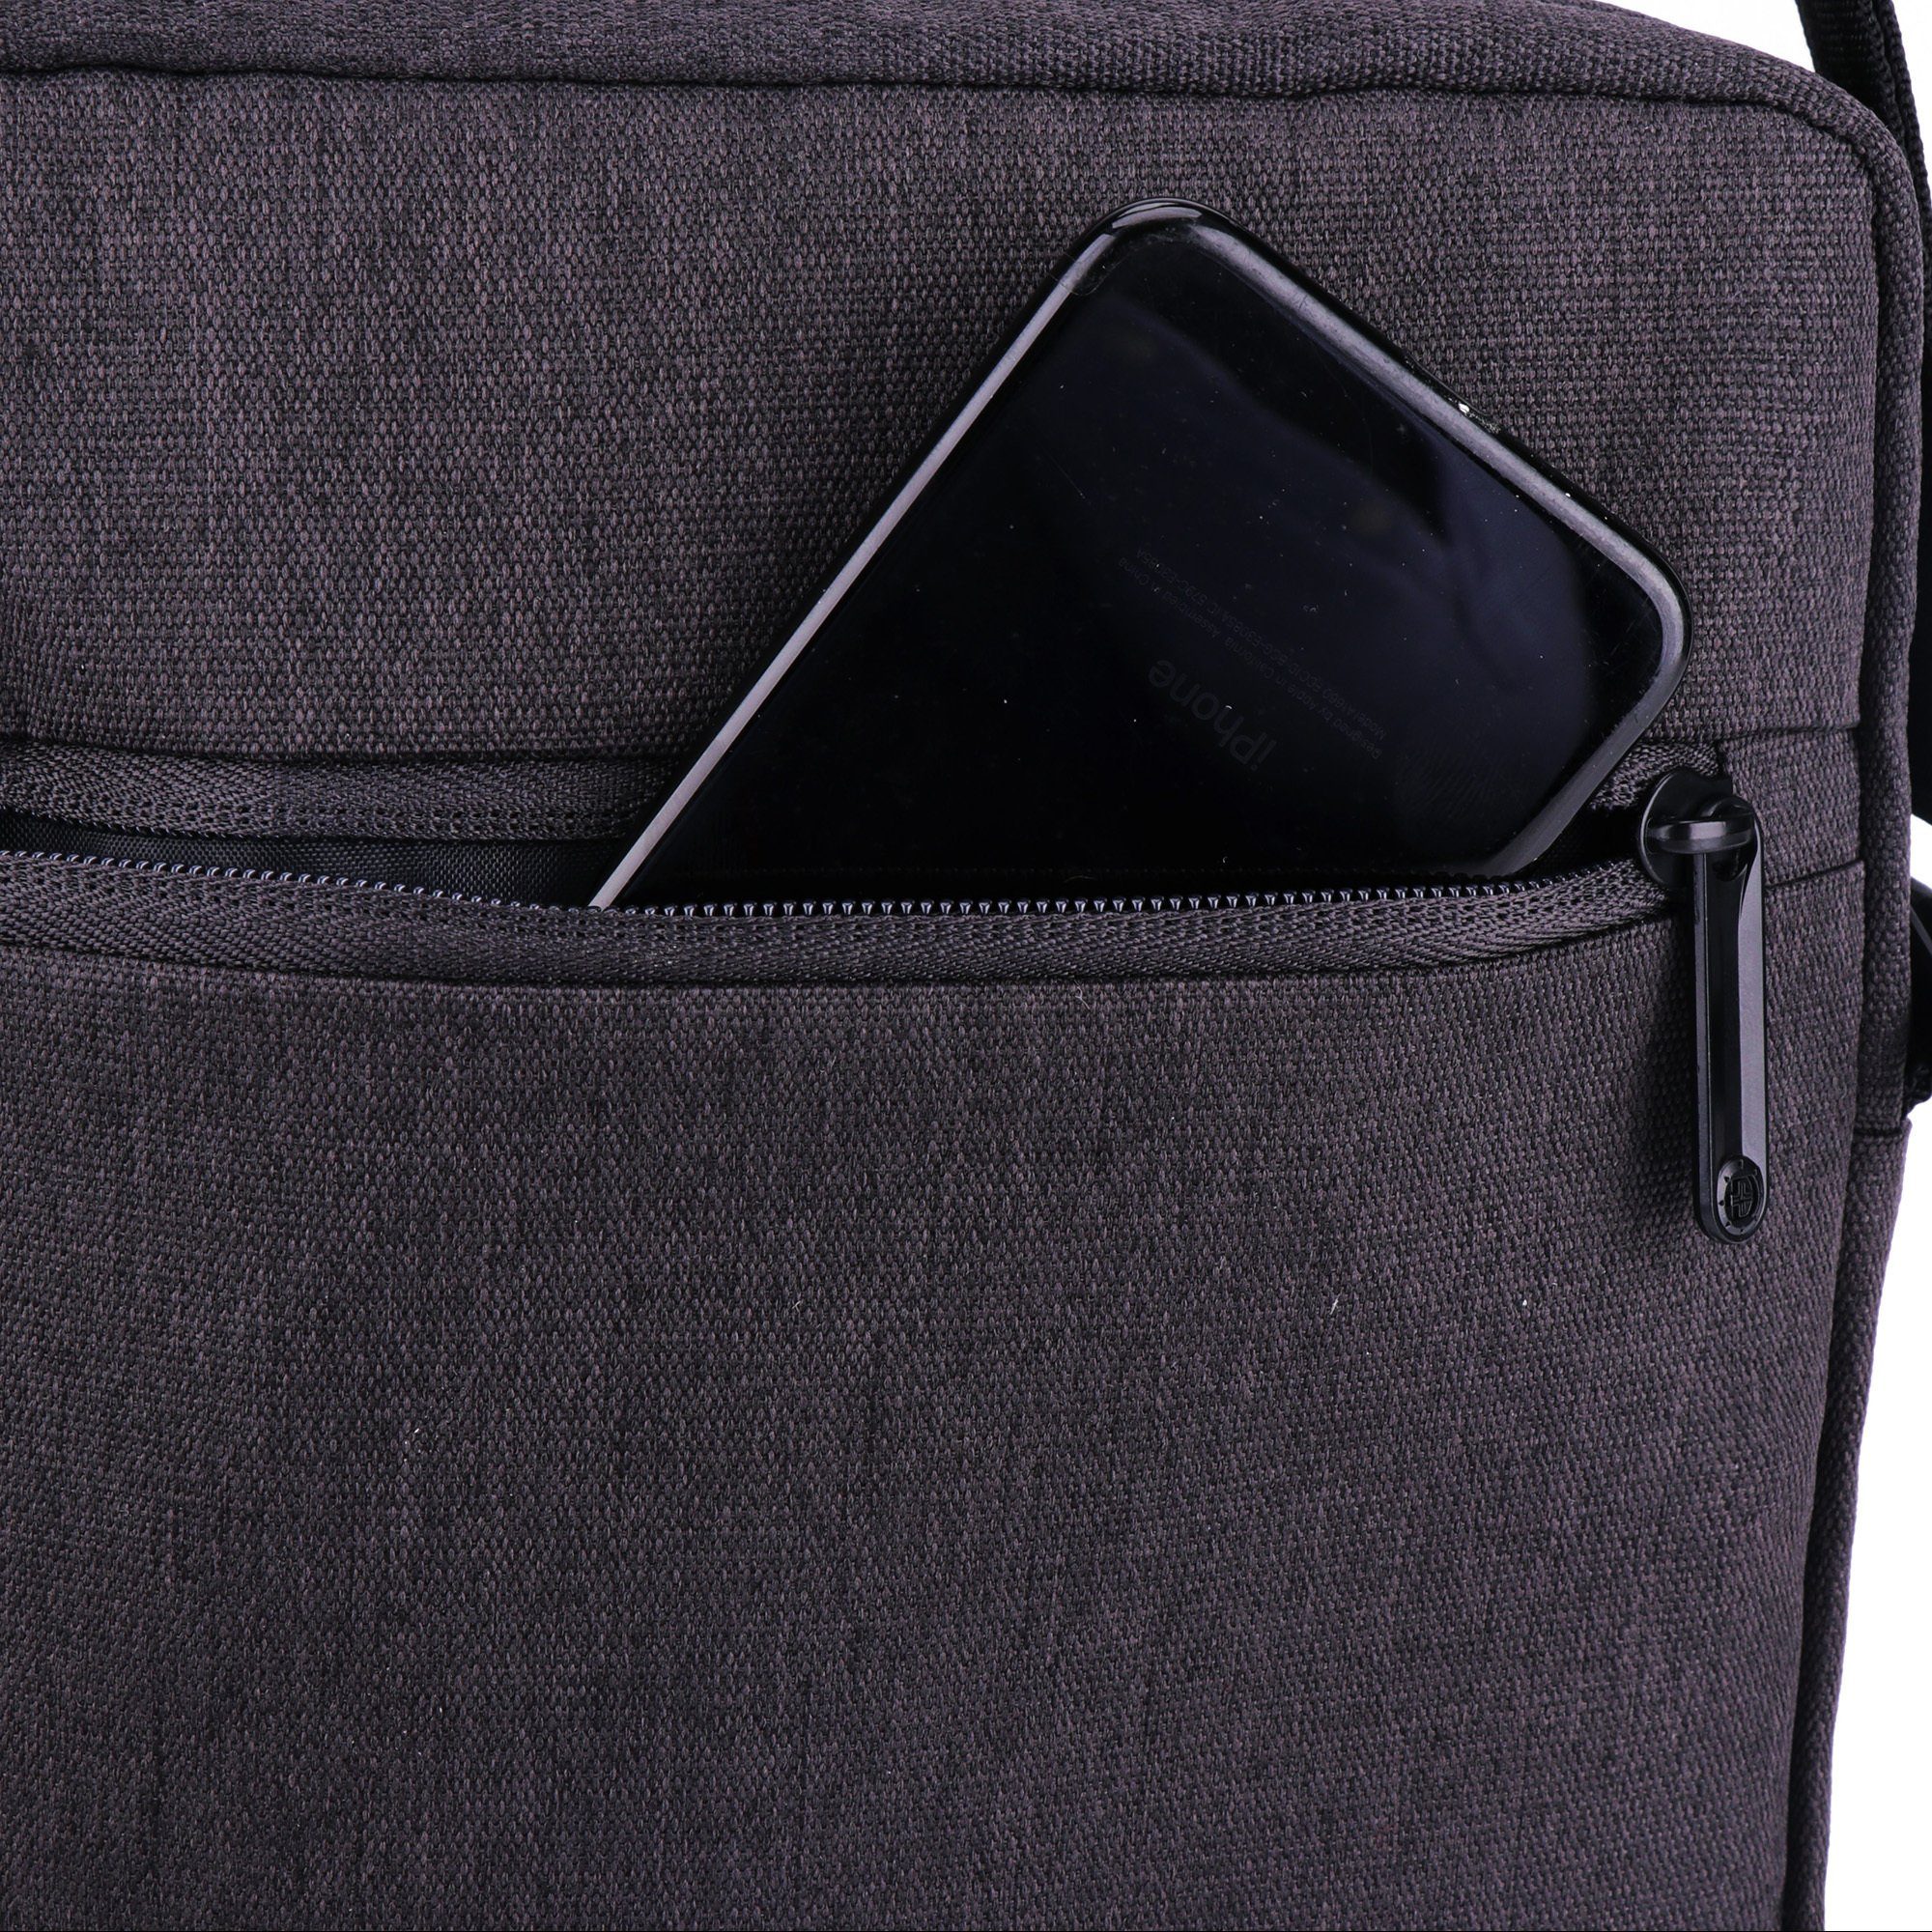 iPad-Tasche Swissdigital Schultertasche, Design